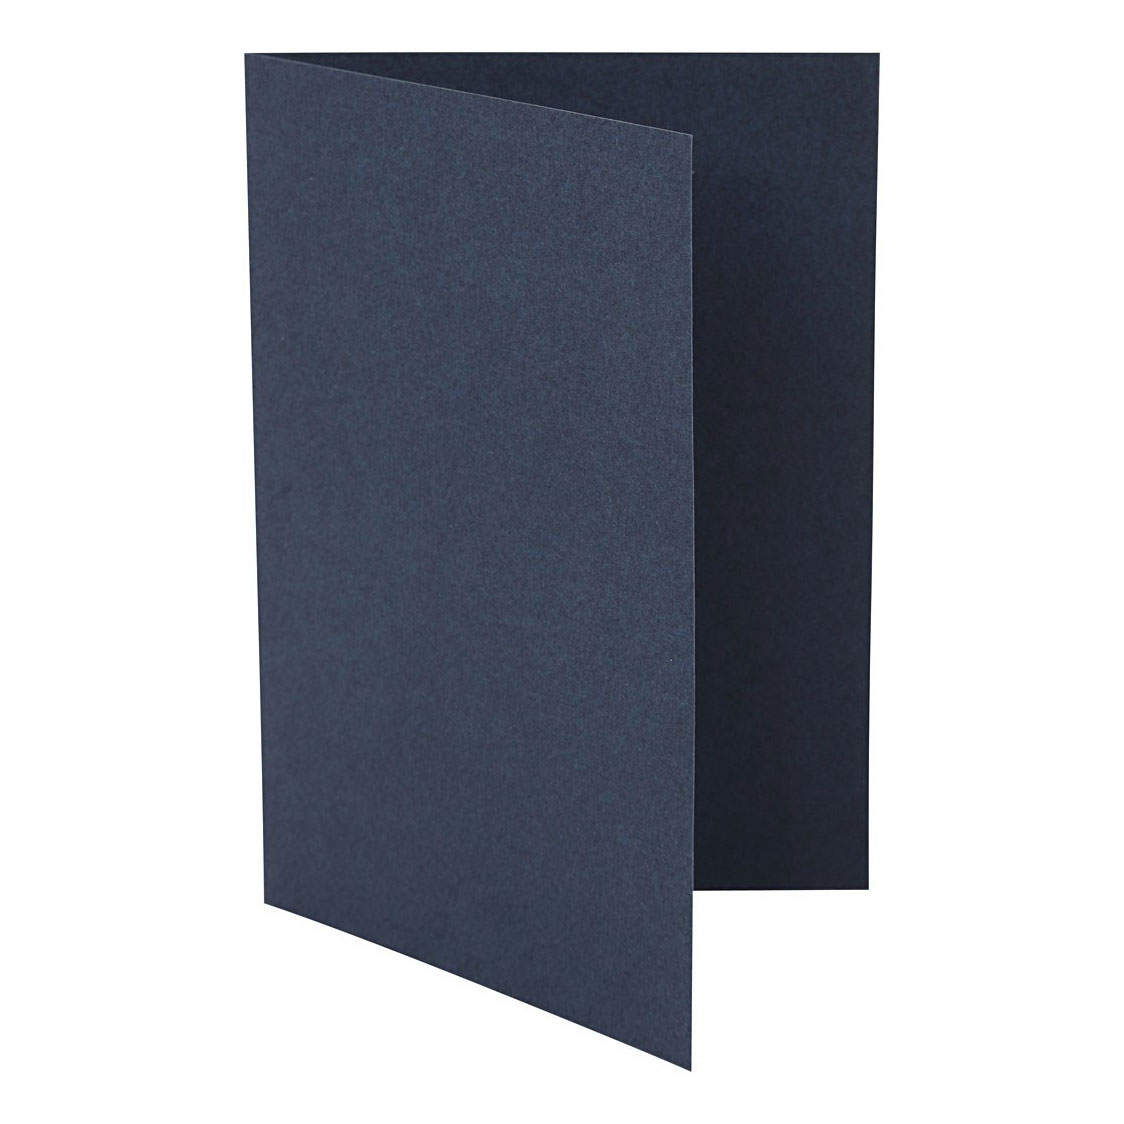 Cartes bleues 10,5x15cm, 10 pcs.